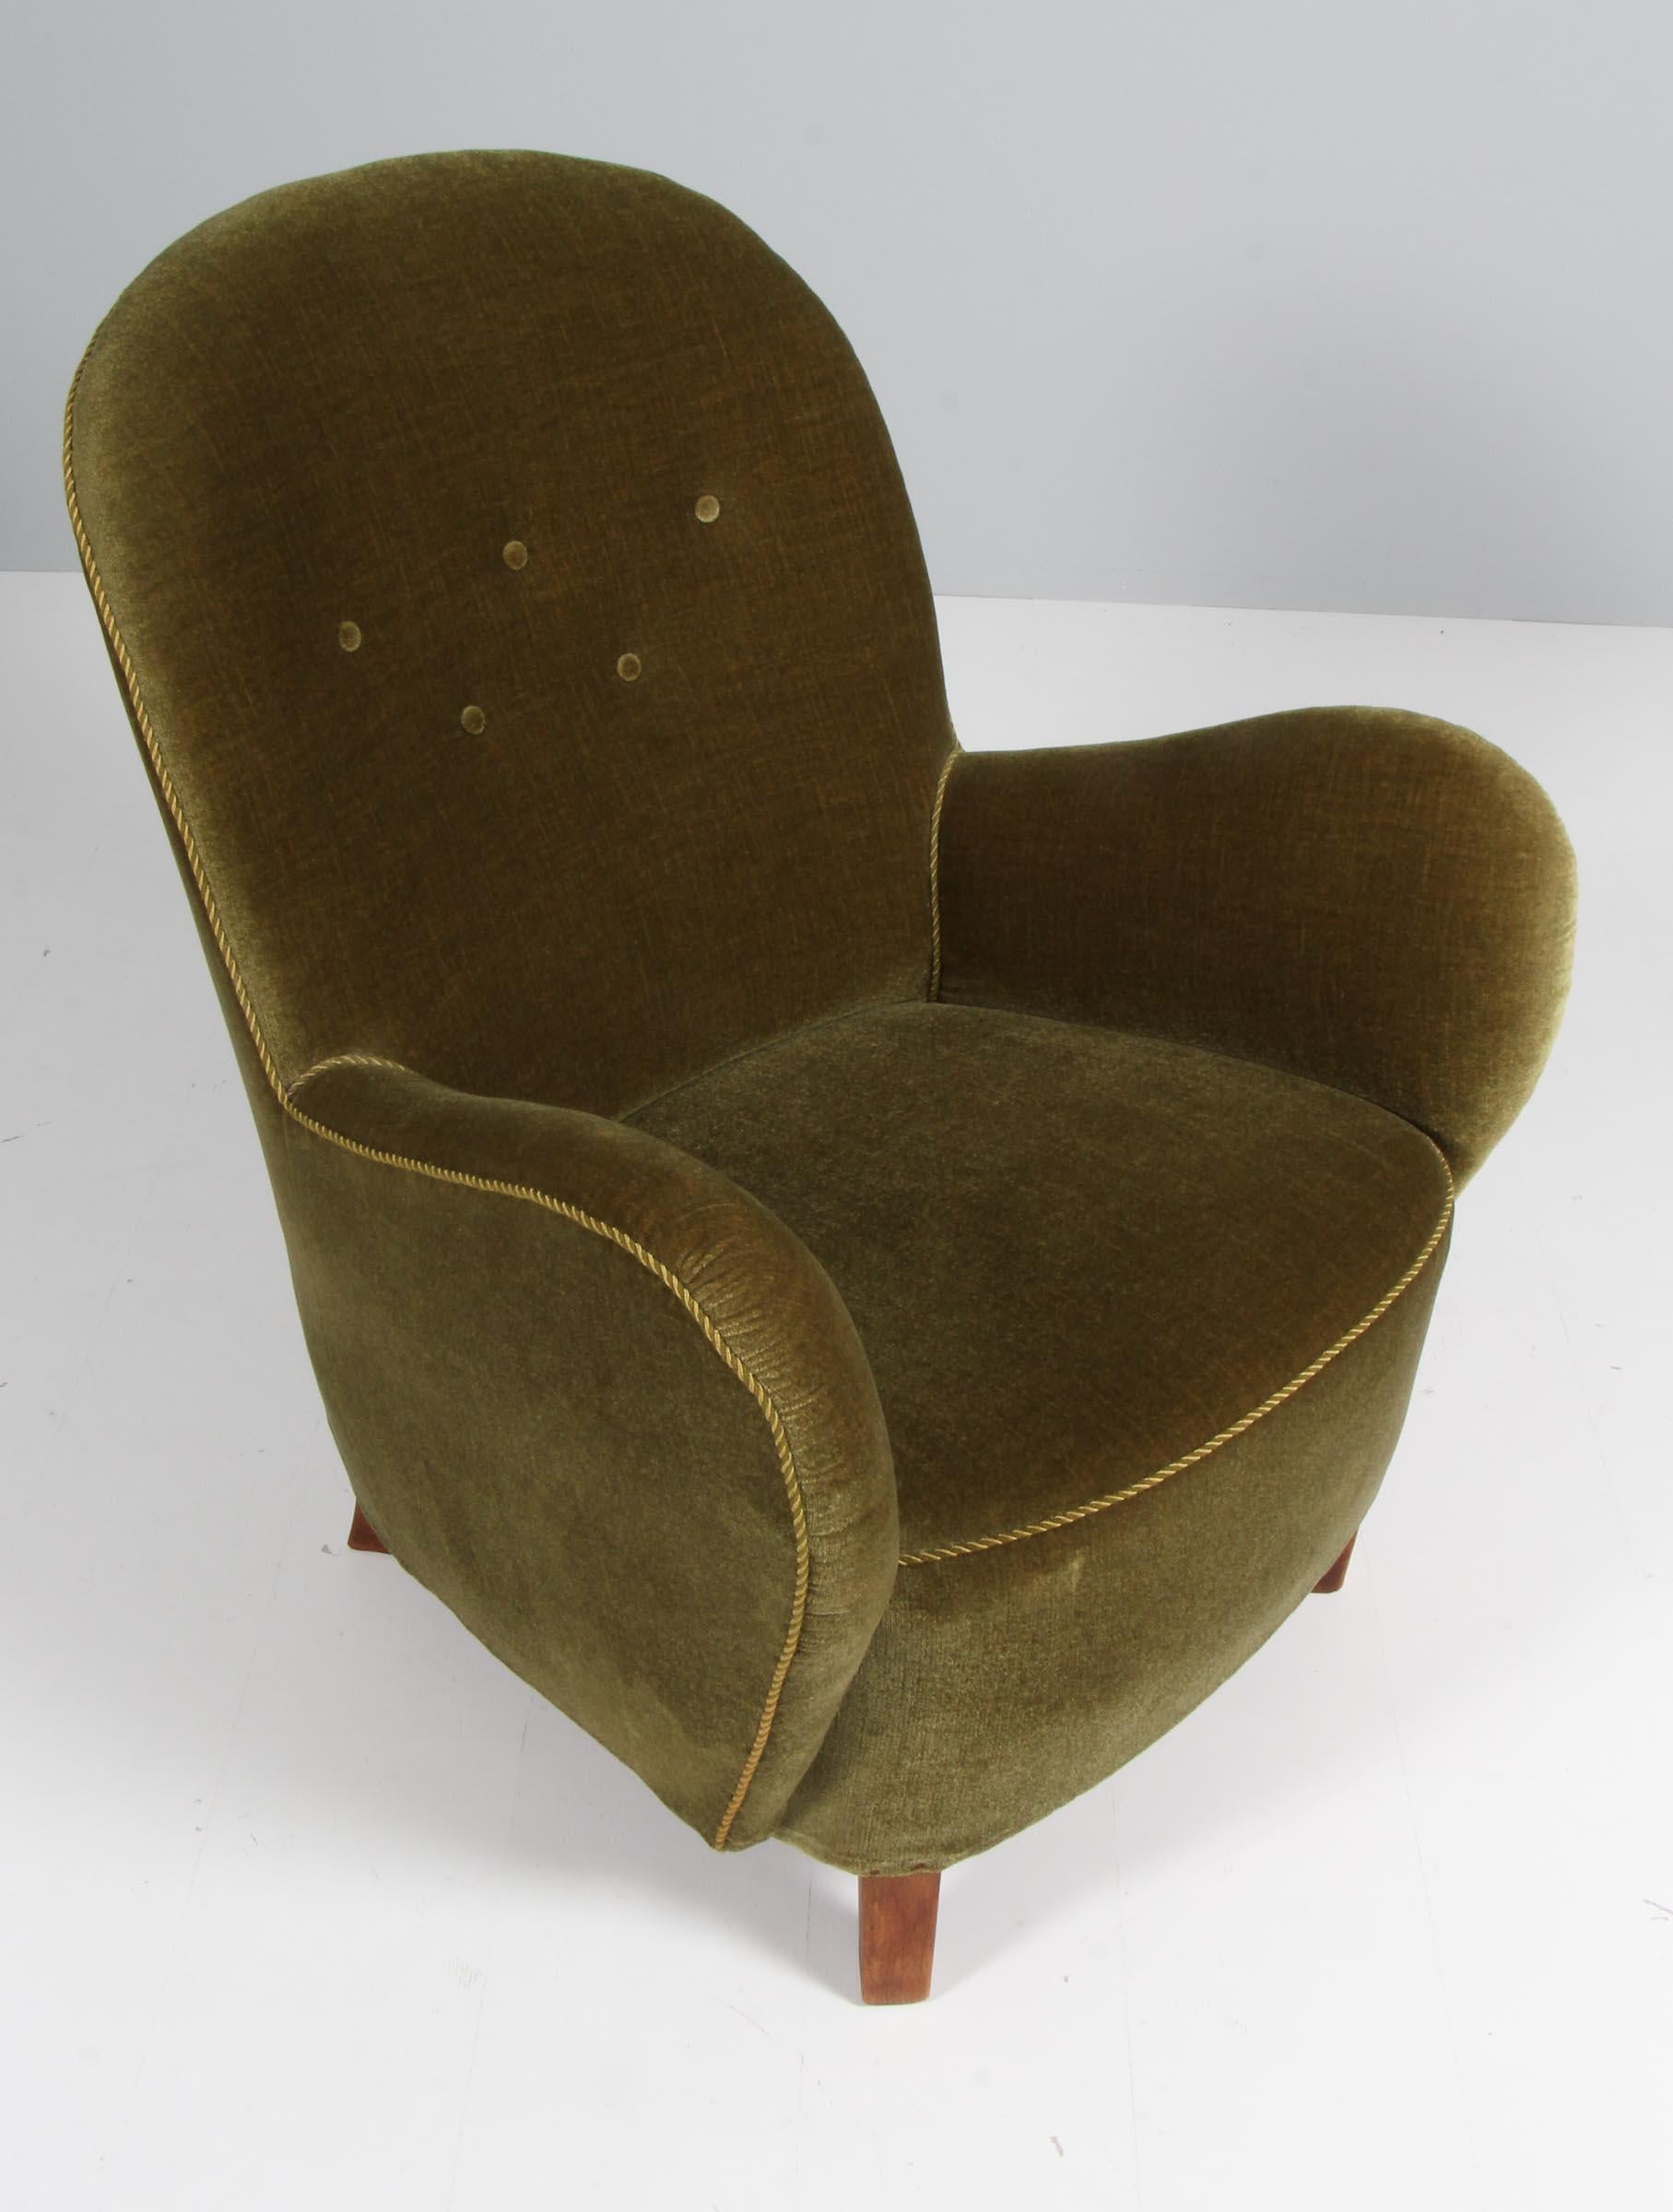 Chaise longue Georg Kofoed en velours d'origine avec boutons.

Pieds en hêtre teinté.

Fabriqué par Georg Kofoed dans les années 1940.